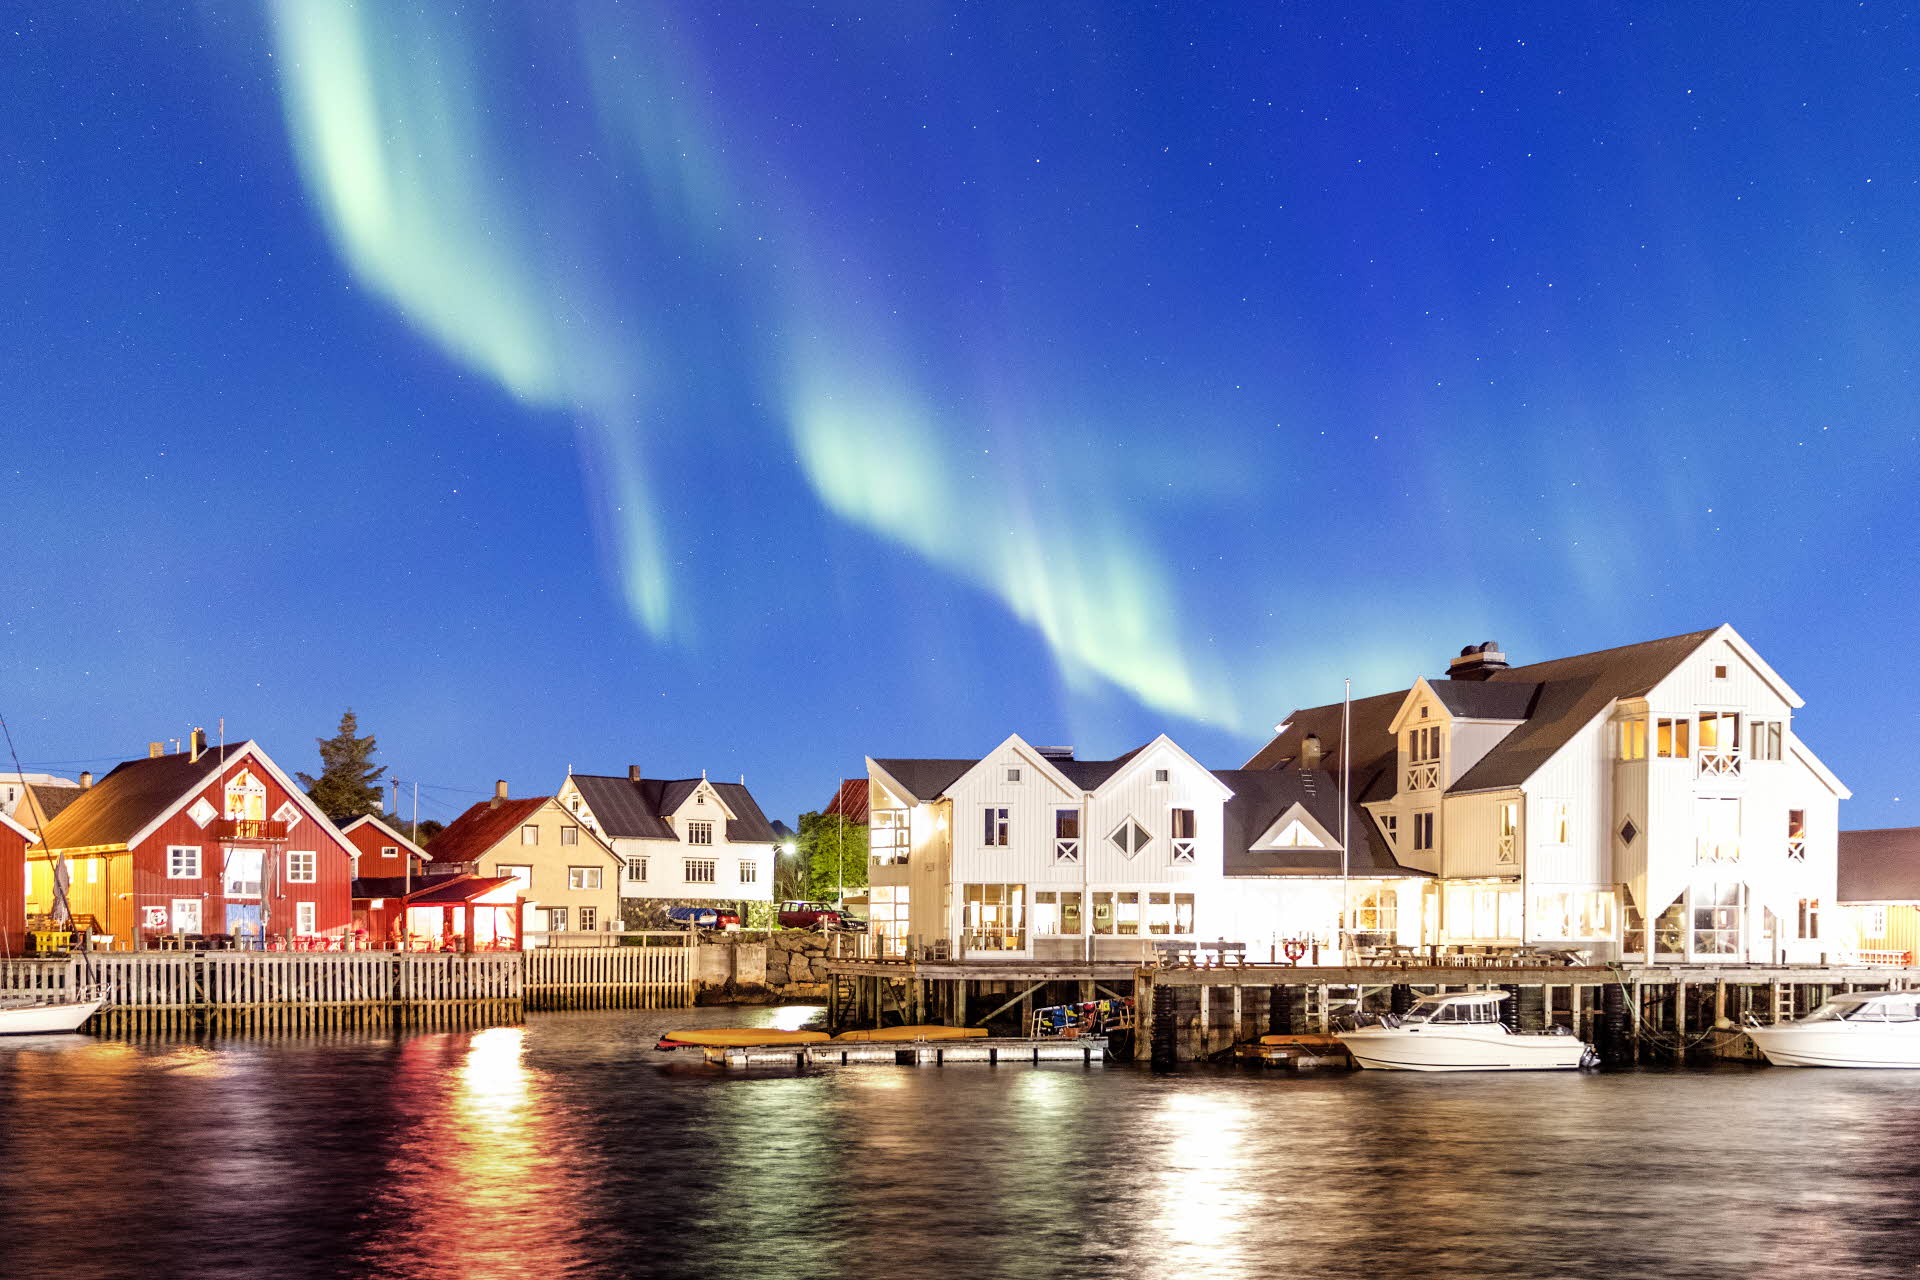 Aurora boreal en el cielo sobre el muelle y el Henningsvær Bryggehotell. 